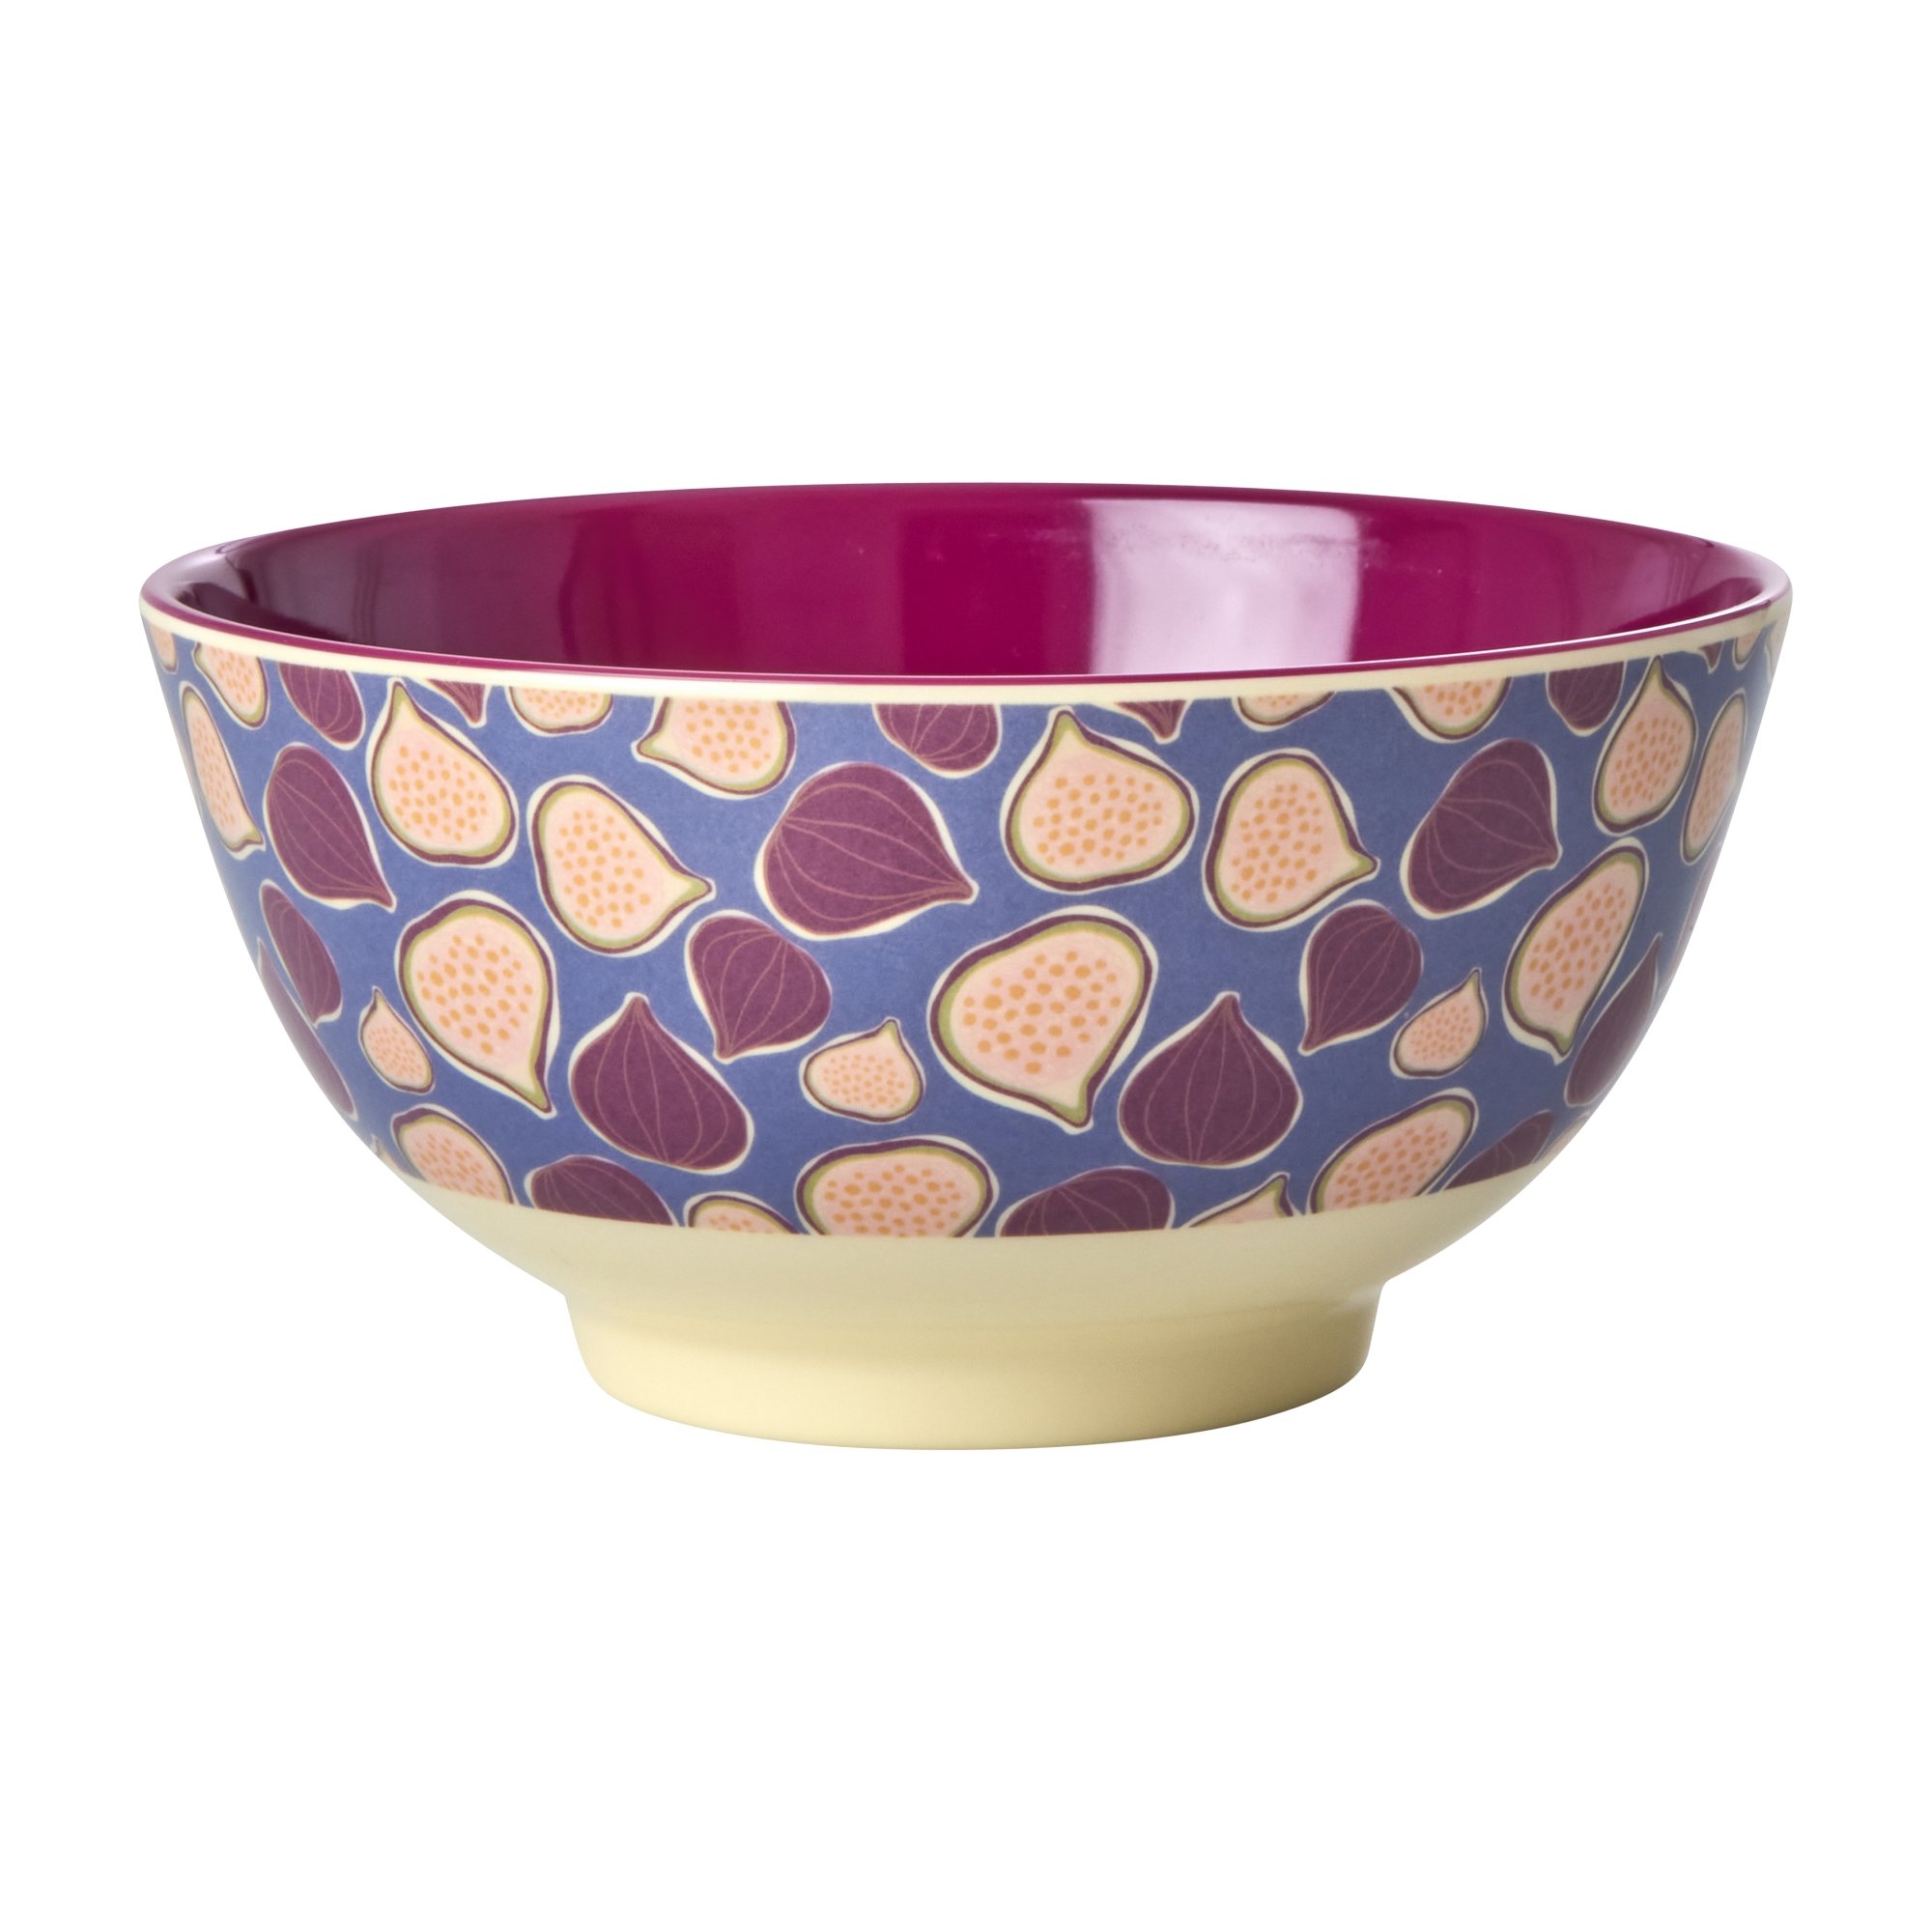 Rice - Melamine Bowl with Figs in Love Print - Medium - Hjemme og kjøkken